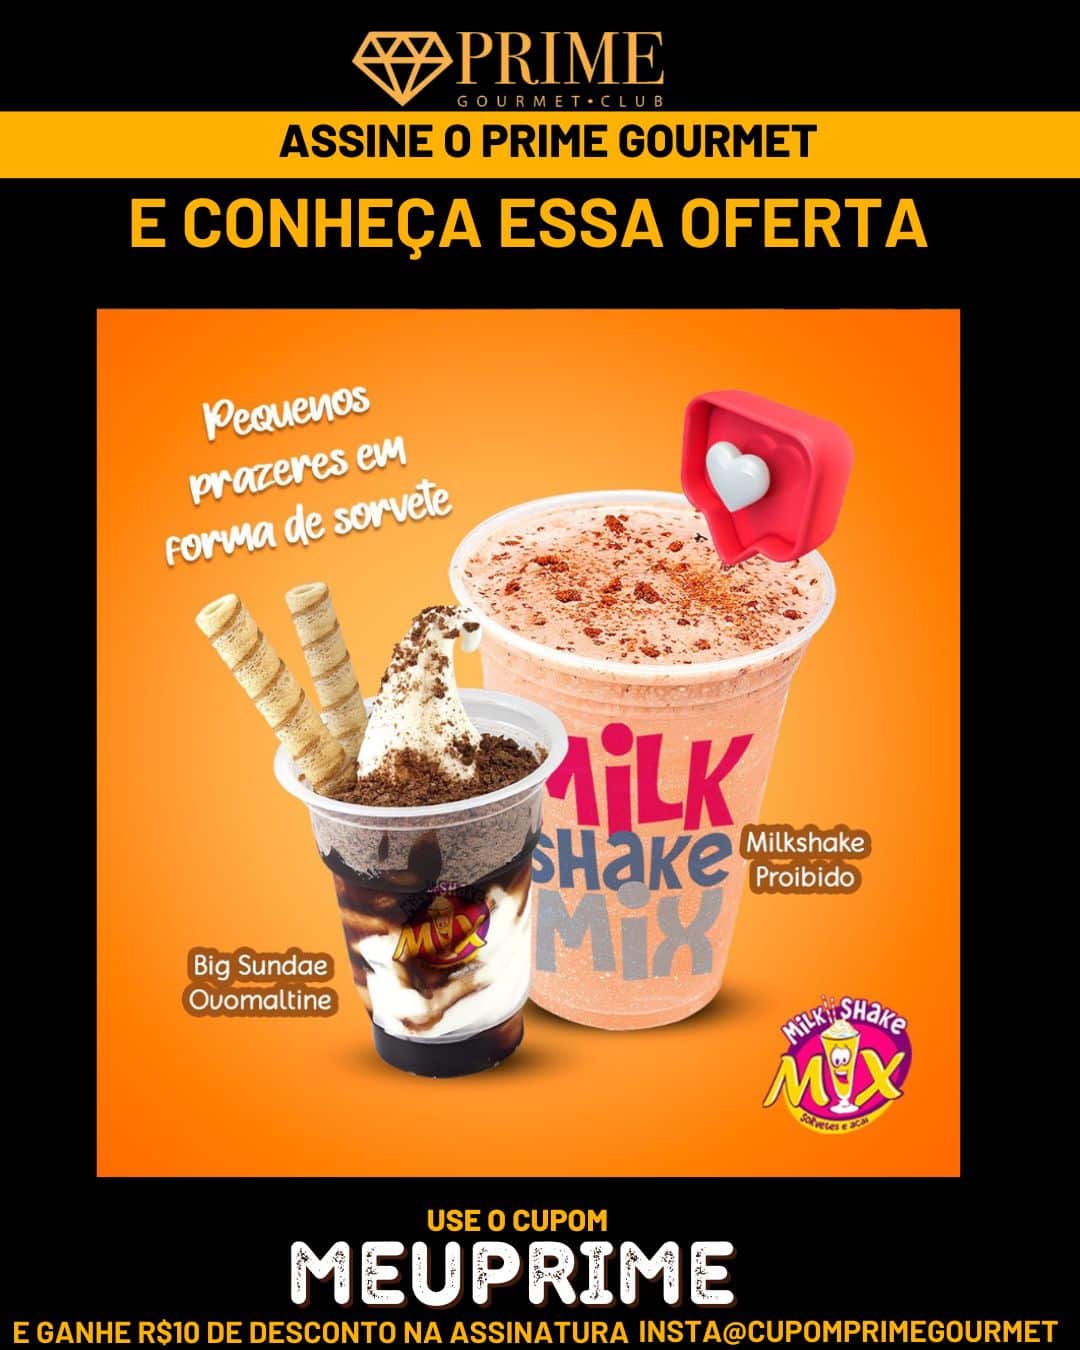 Prime Gourmet Maranhão e Região - Milk Shake Mix